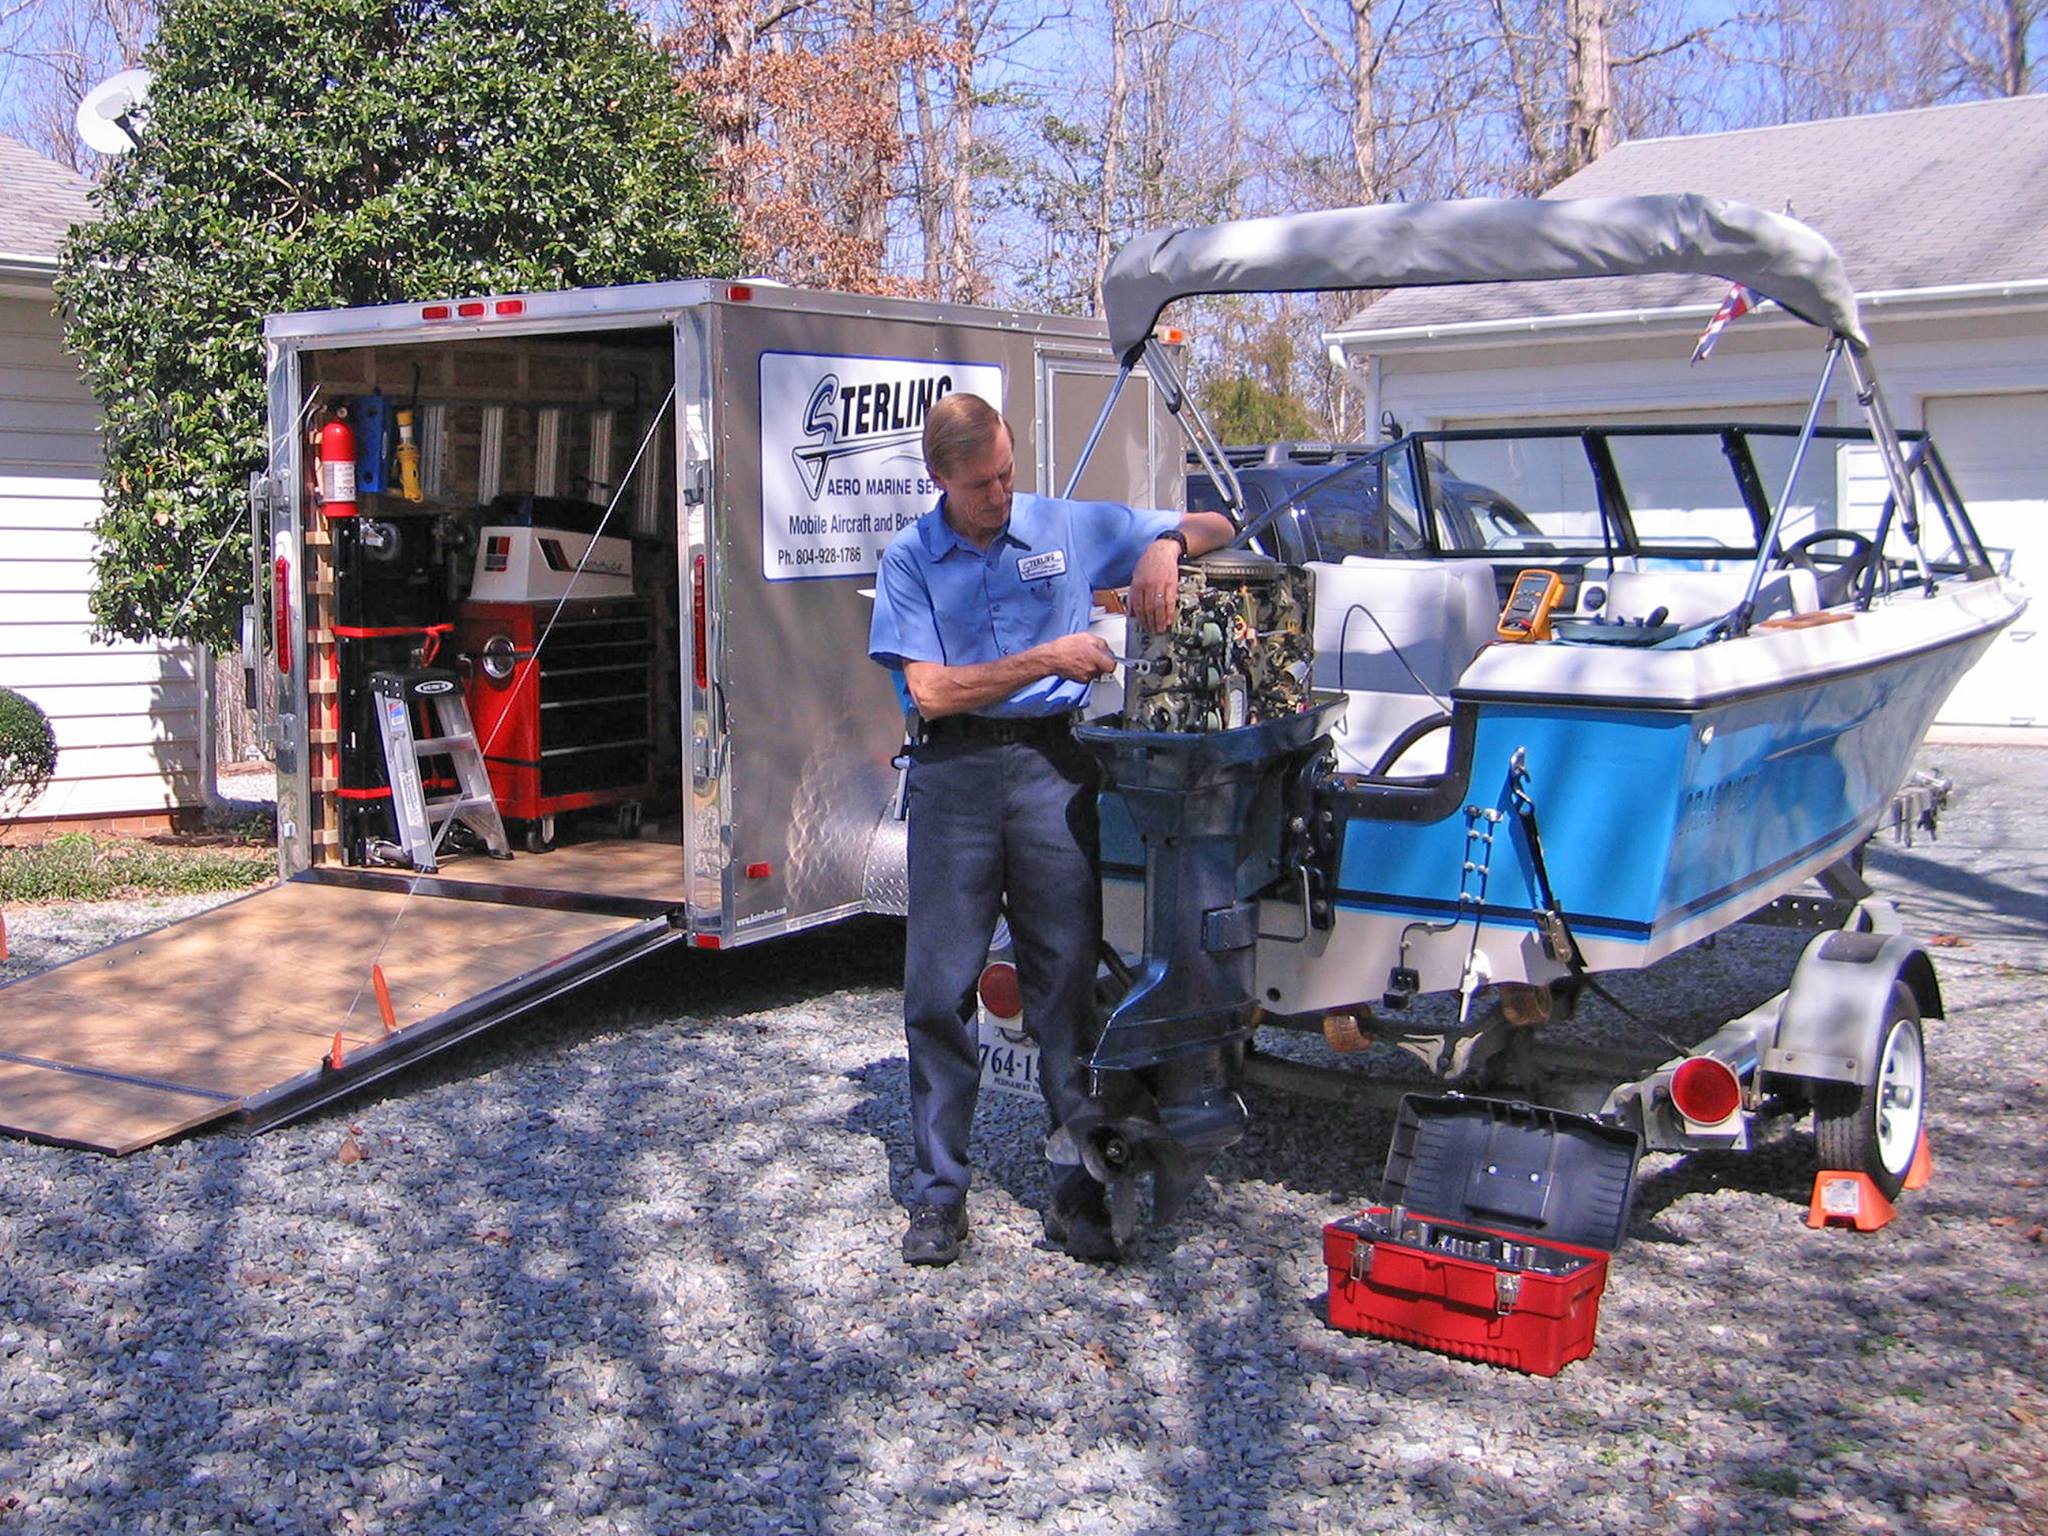 Boat repair and service for Lake Anna, Lake Louisa, Lake Monticello ... - Sterlingboatrepair 1